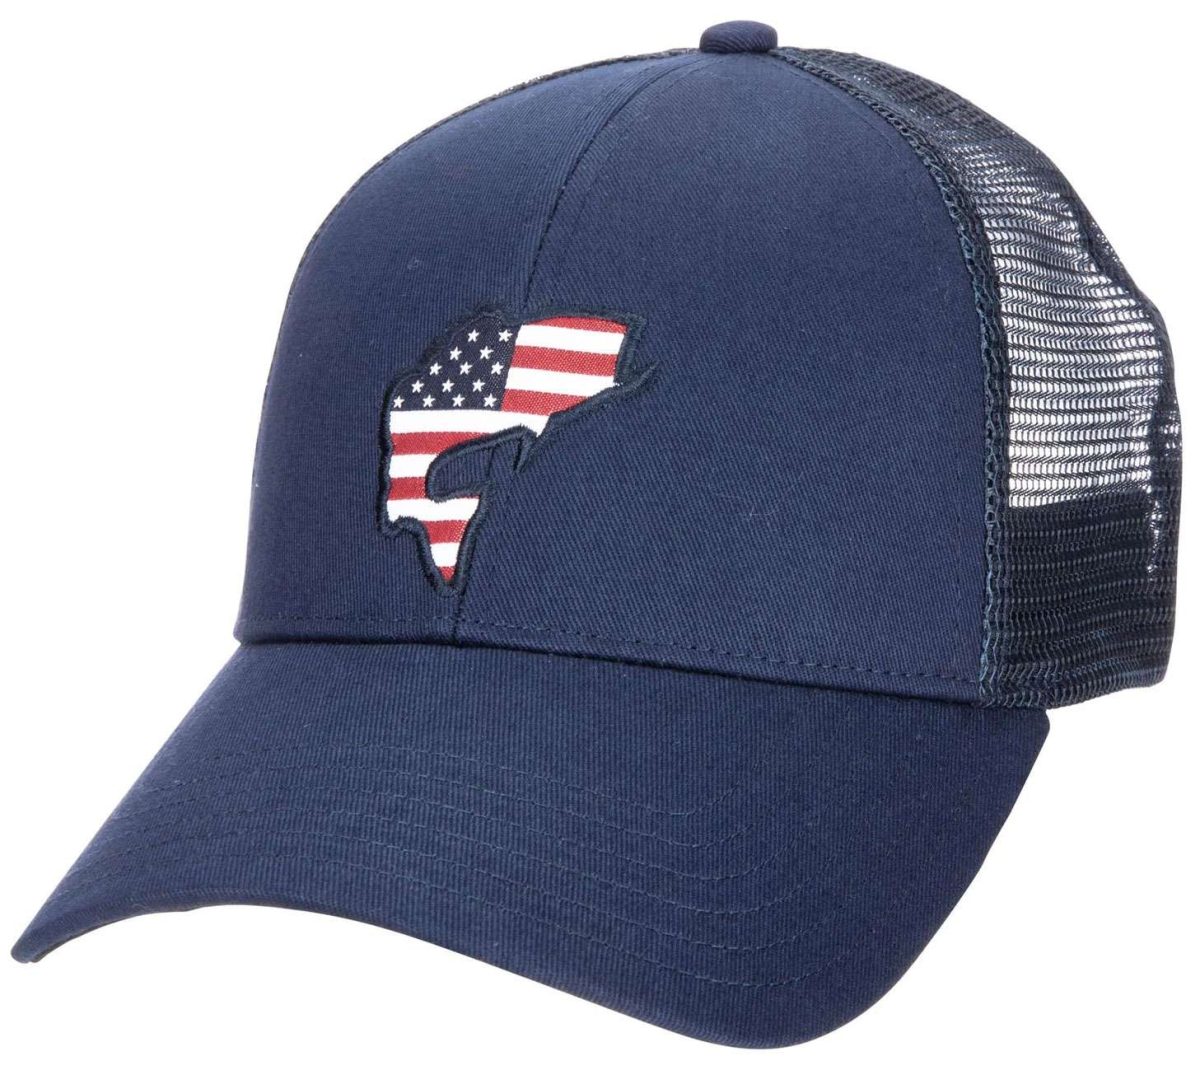 Simms USA Catch Trucker Hat - Admiral Blue